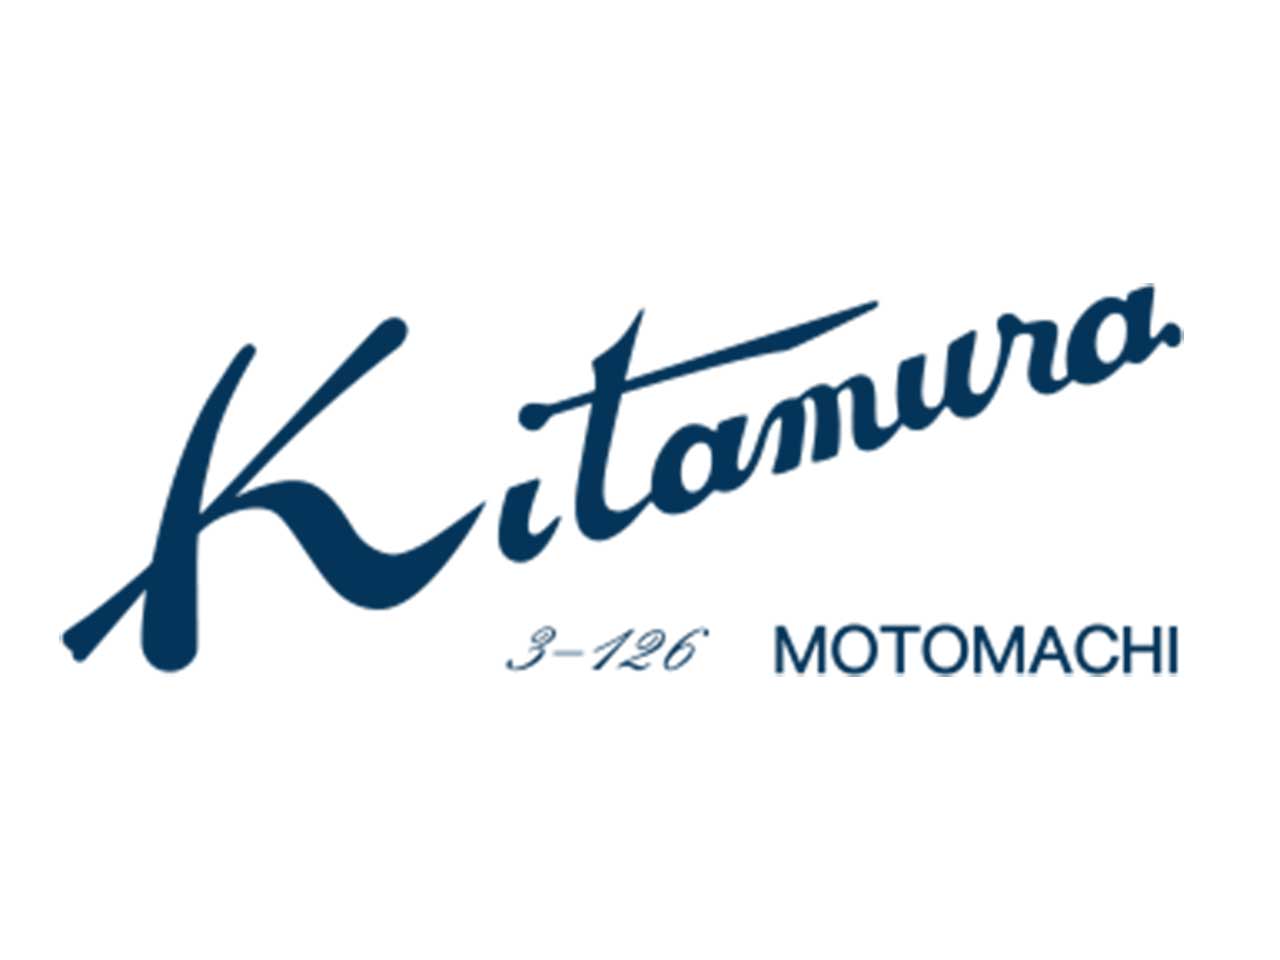 キタムラ - クロコダイルショップ